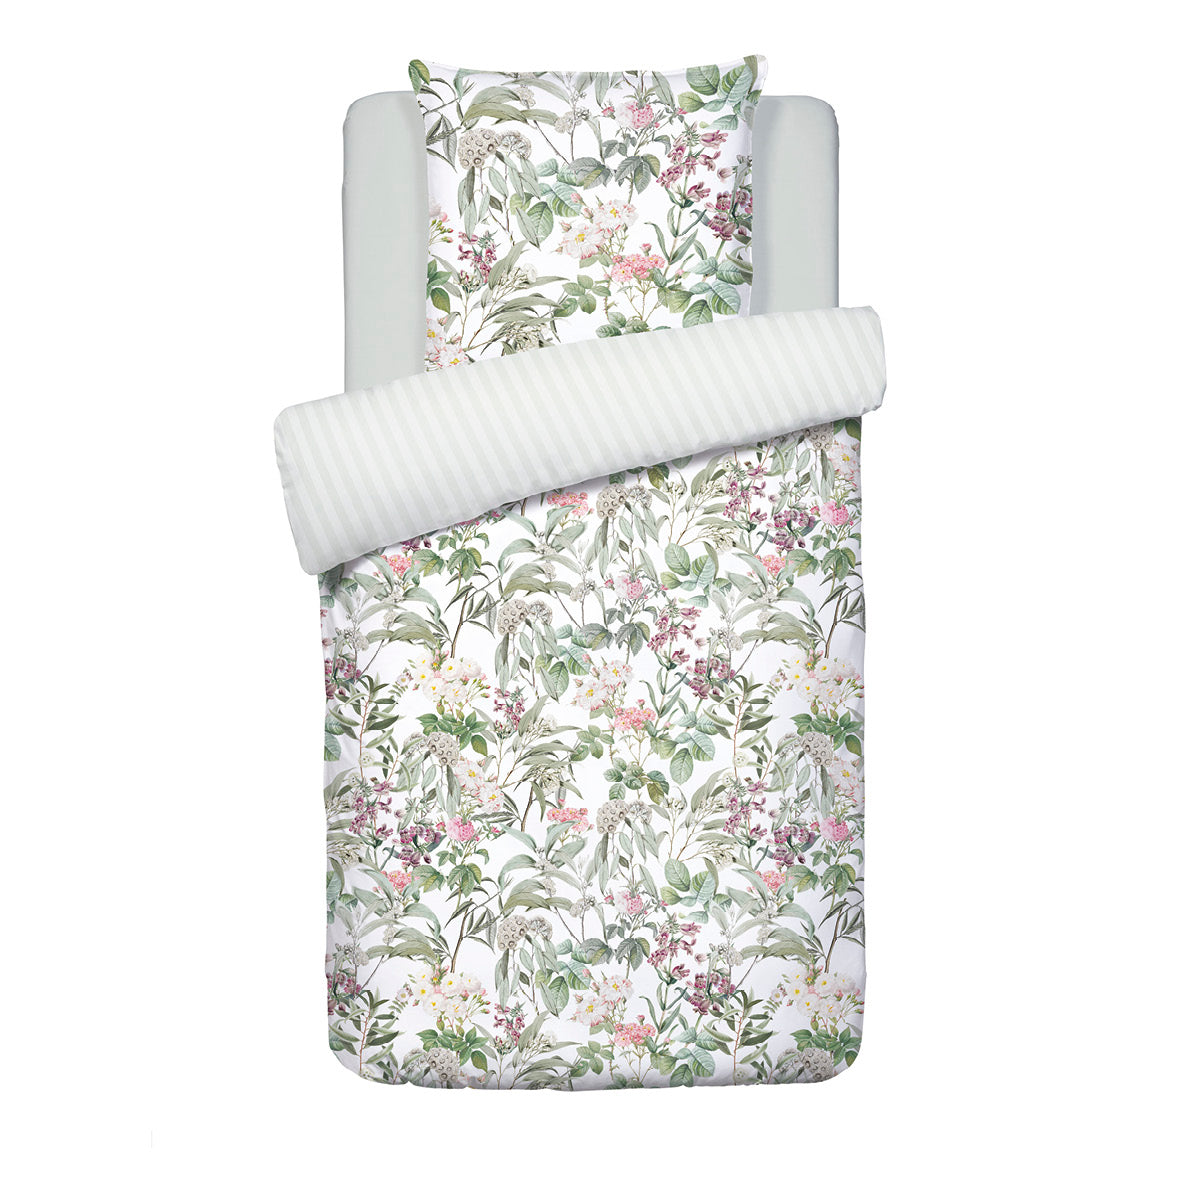 Duvet cover + pillowcase(s) cotton satin - Rozas white